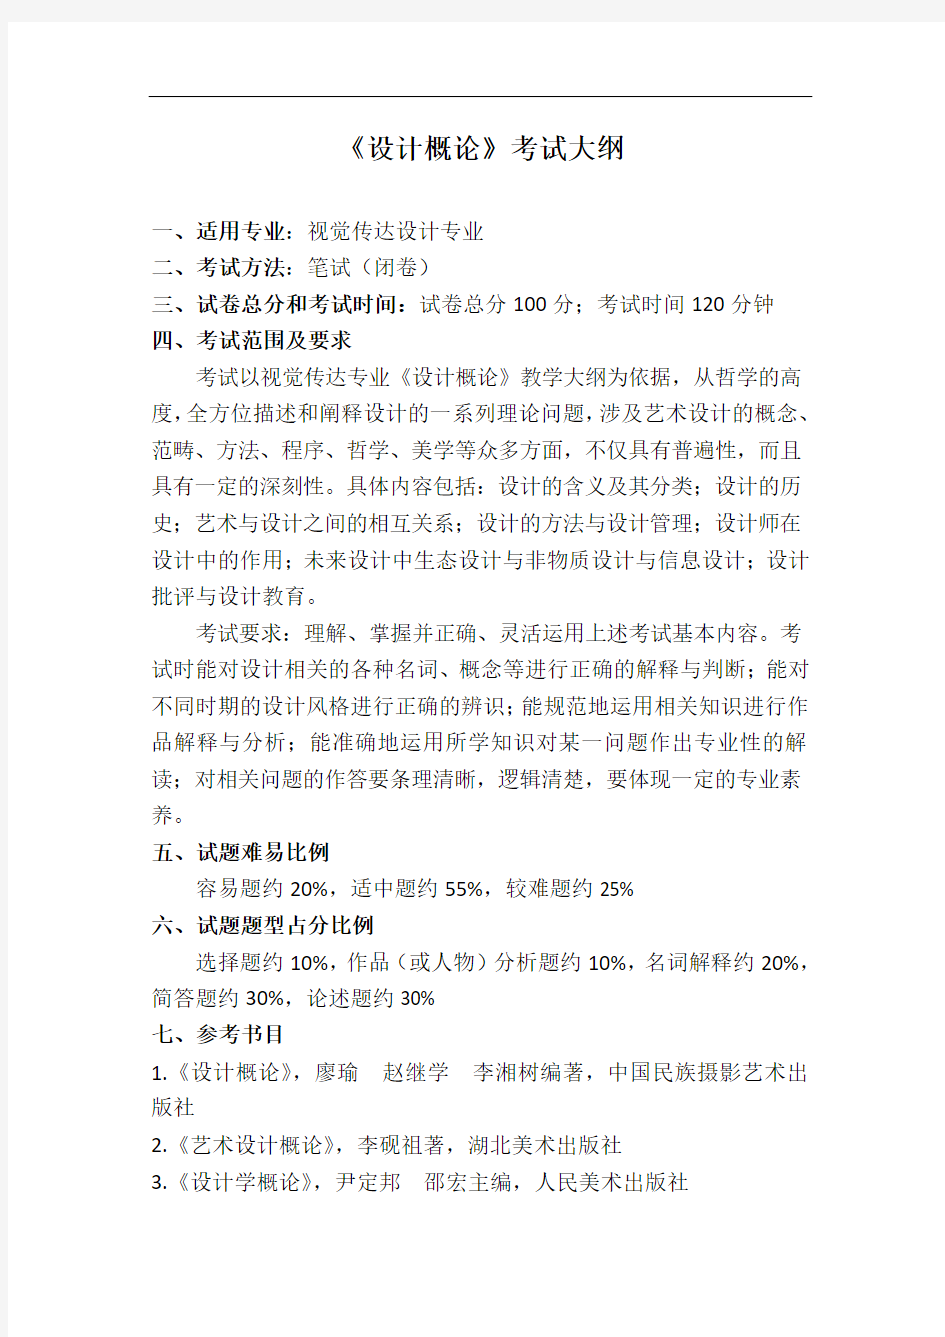 2020年萍乡学院“专升本”《设计概论》课程考试大纲